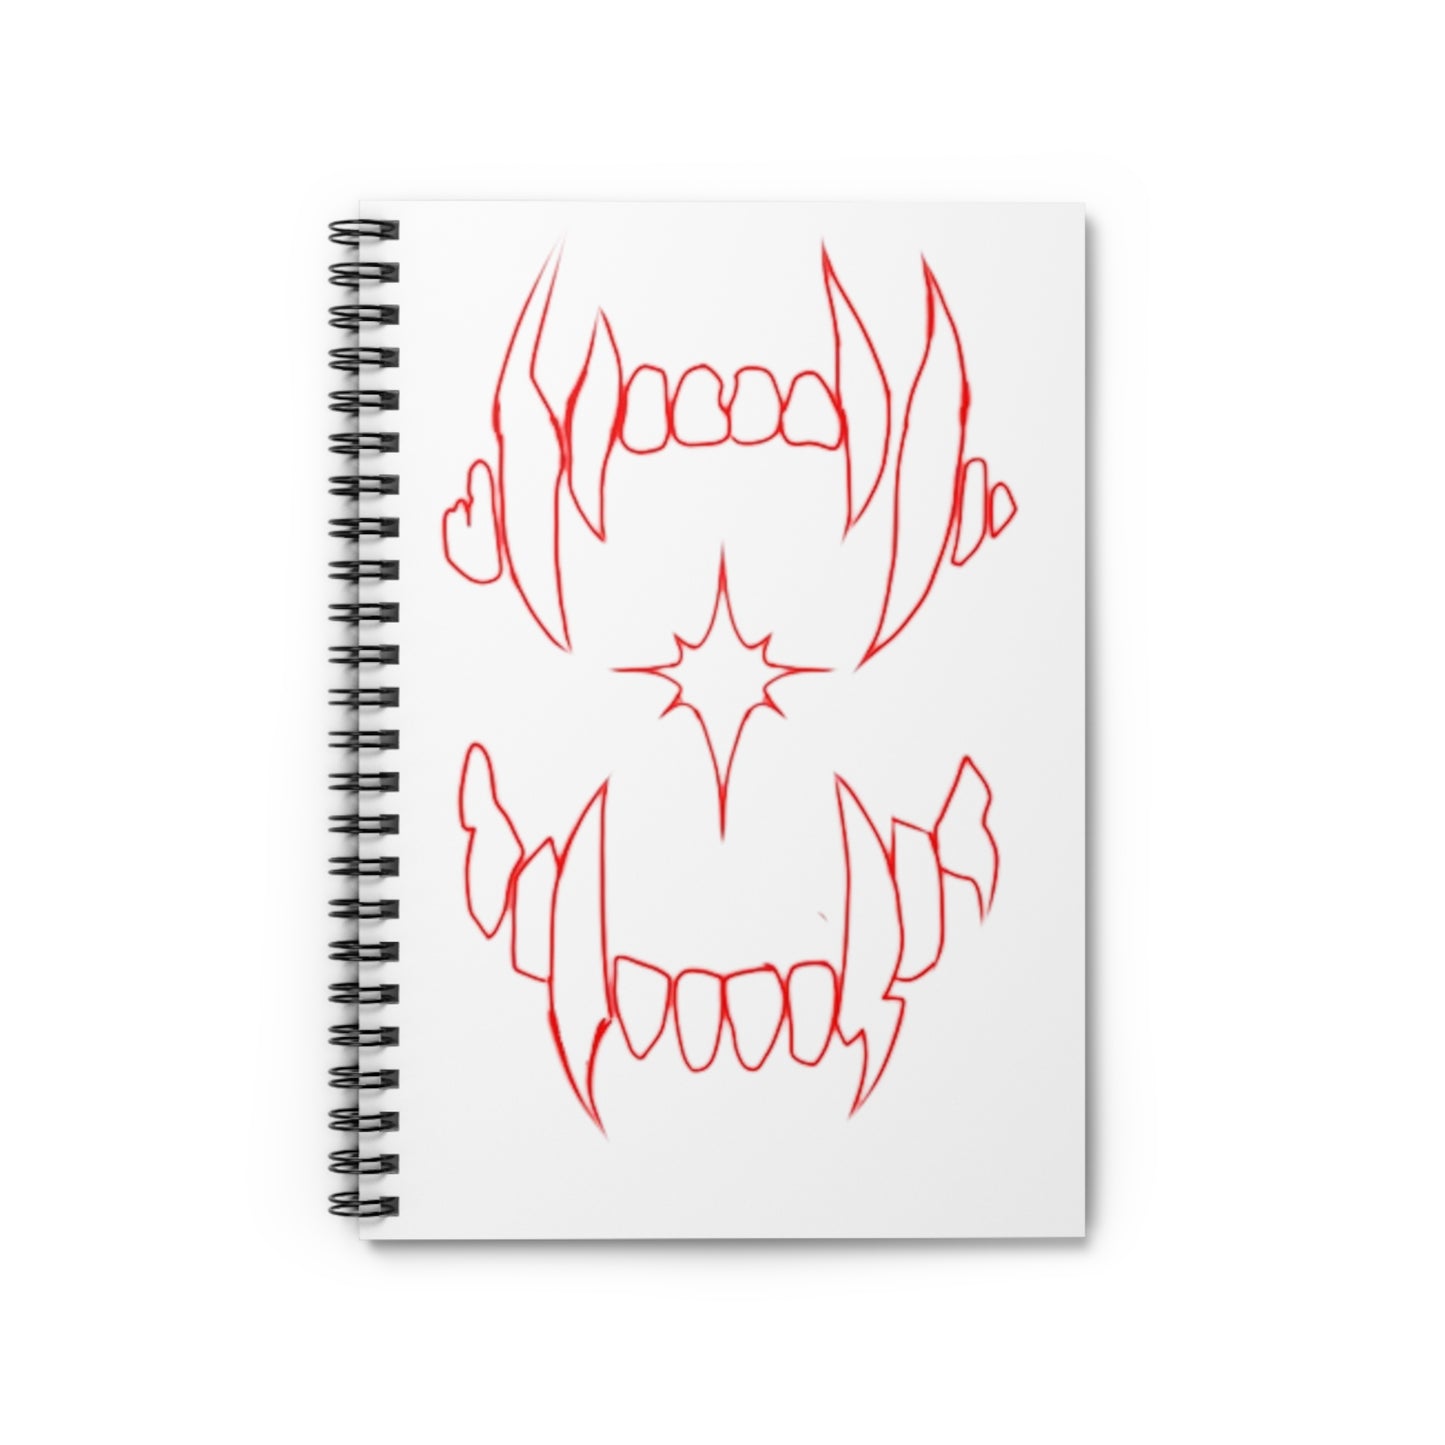 Bloodsucker Spiral Notebook